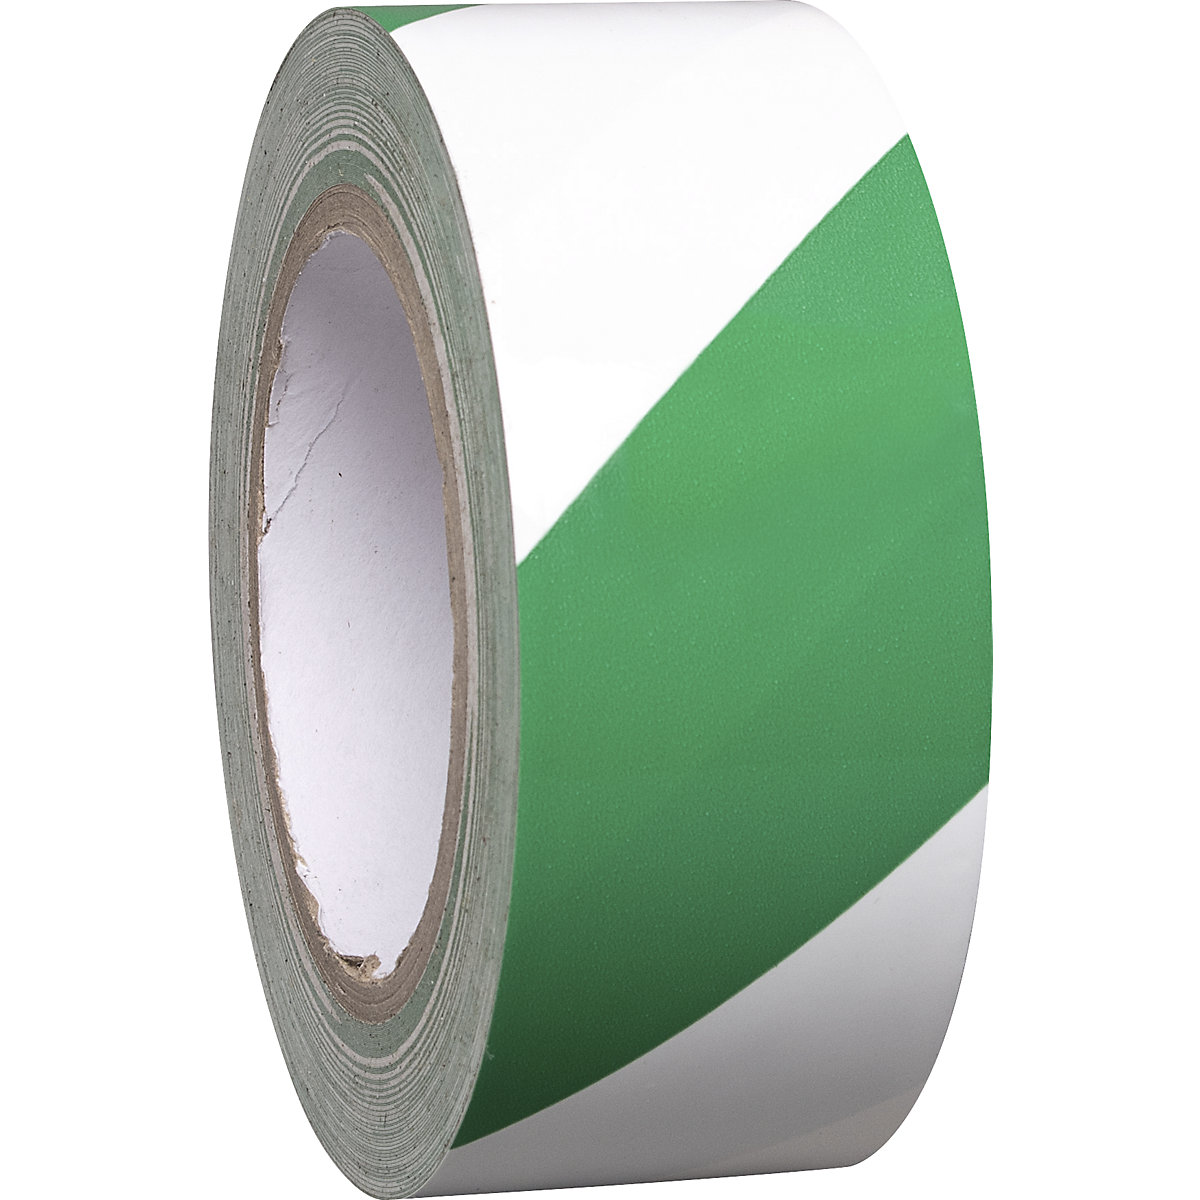 Bandă din vinil pentru marcarea podelei, bicoloră, lățime 50 mm, verde / alb, amb. 8 role-4